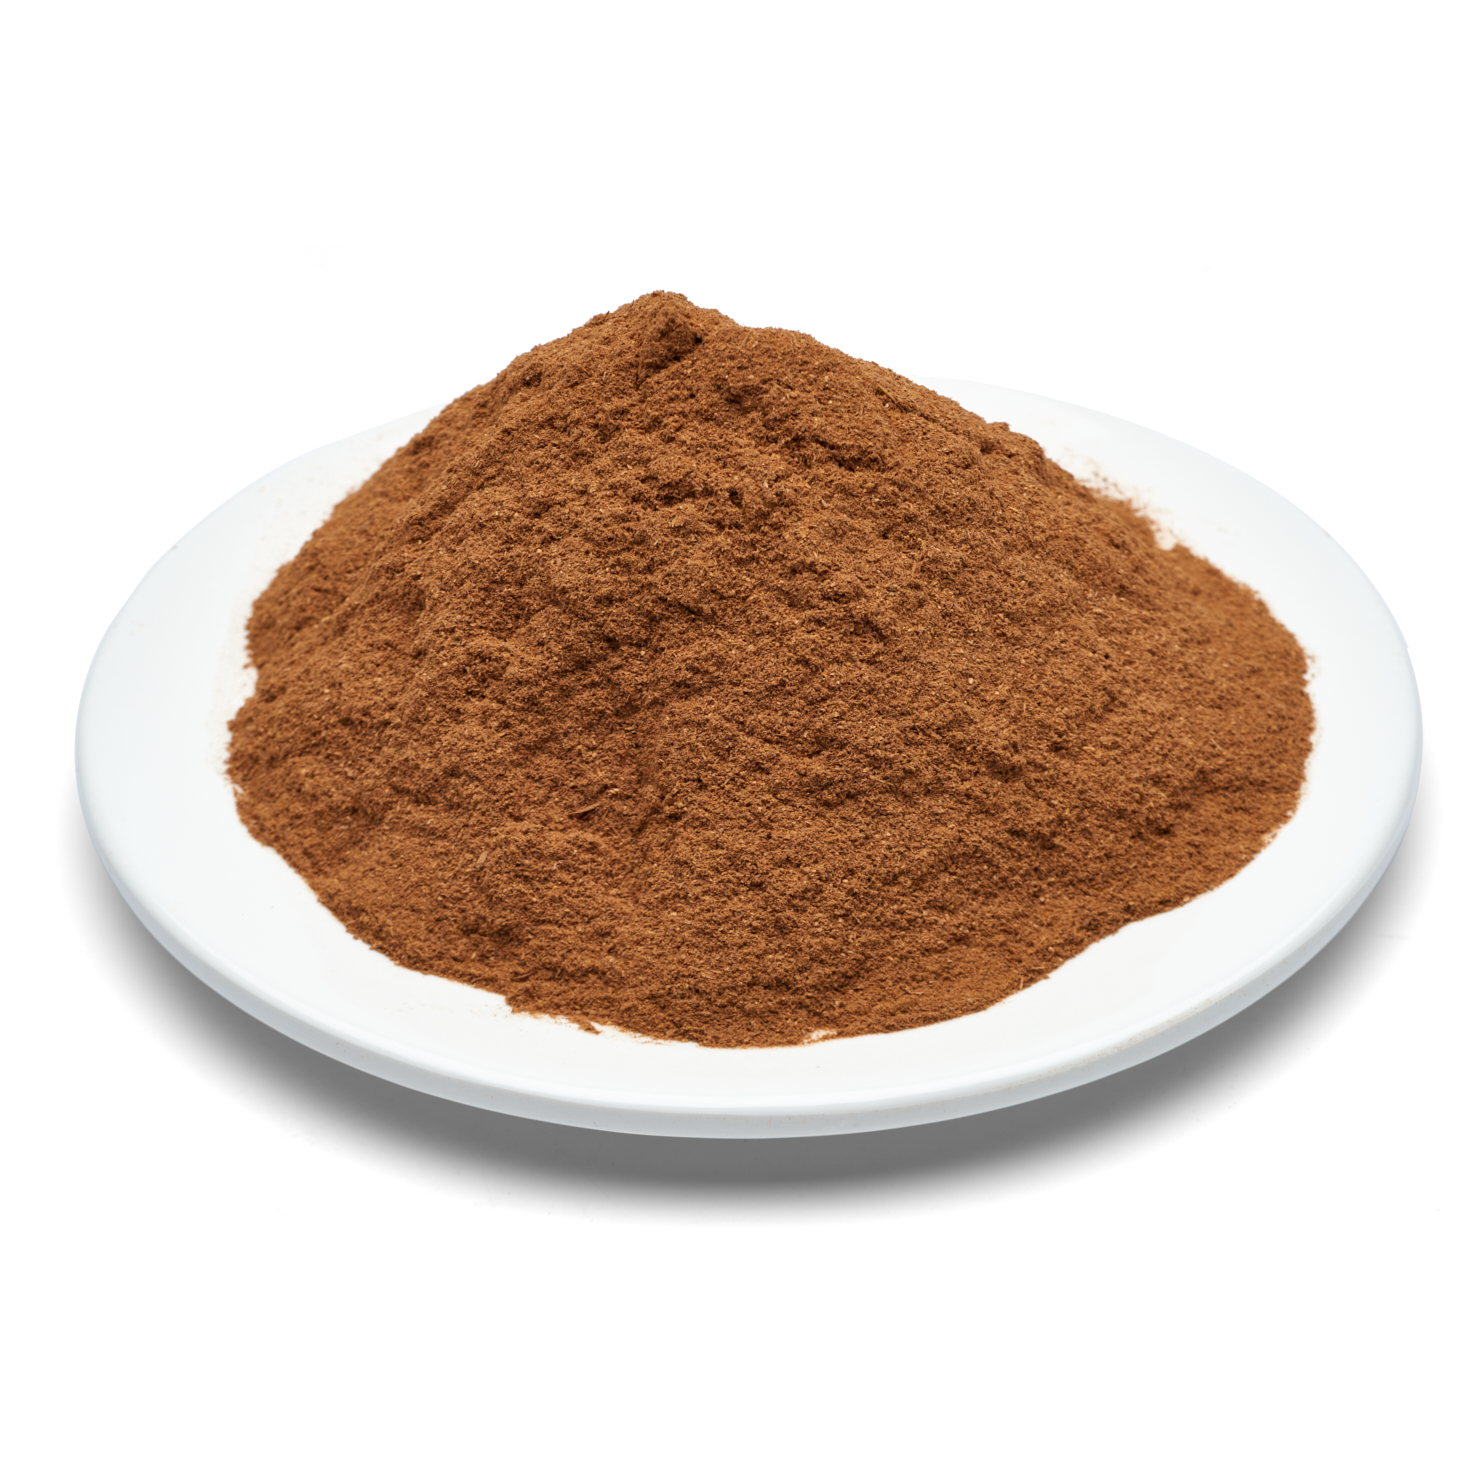 ข้อมูลเพิ่มเติมของ อบเชย ผงอบเชยแท้ Organic Ceylon Cinnamon Powder บรรจุถุงซิปล็อค 200g Cooking & Smoothies 100% Raw from Sri Lanka  Resealable Kraft Bag #ผงอบเชย #cinnamon